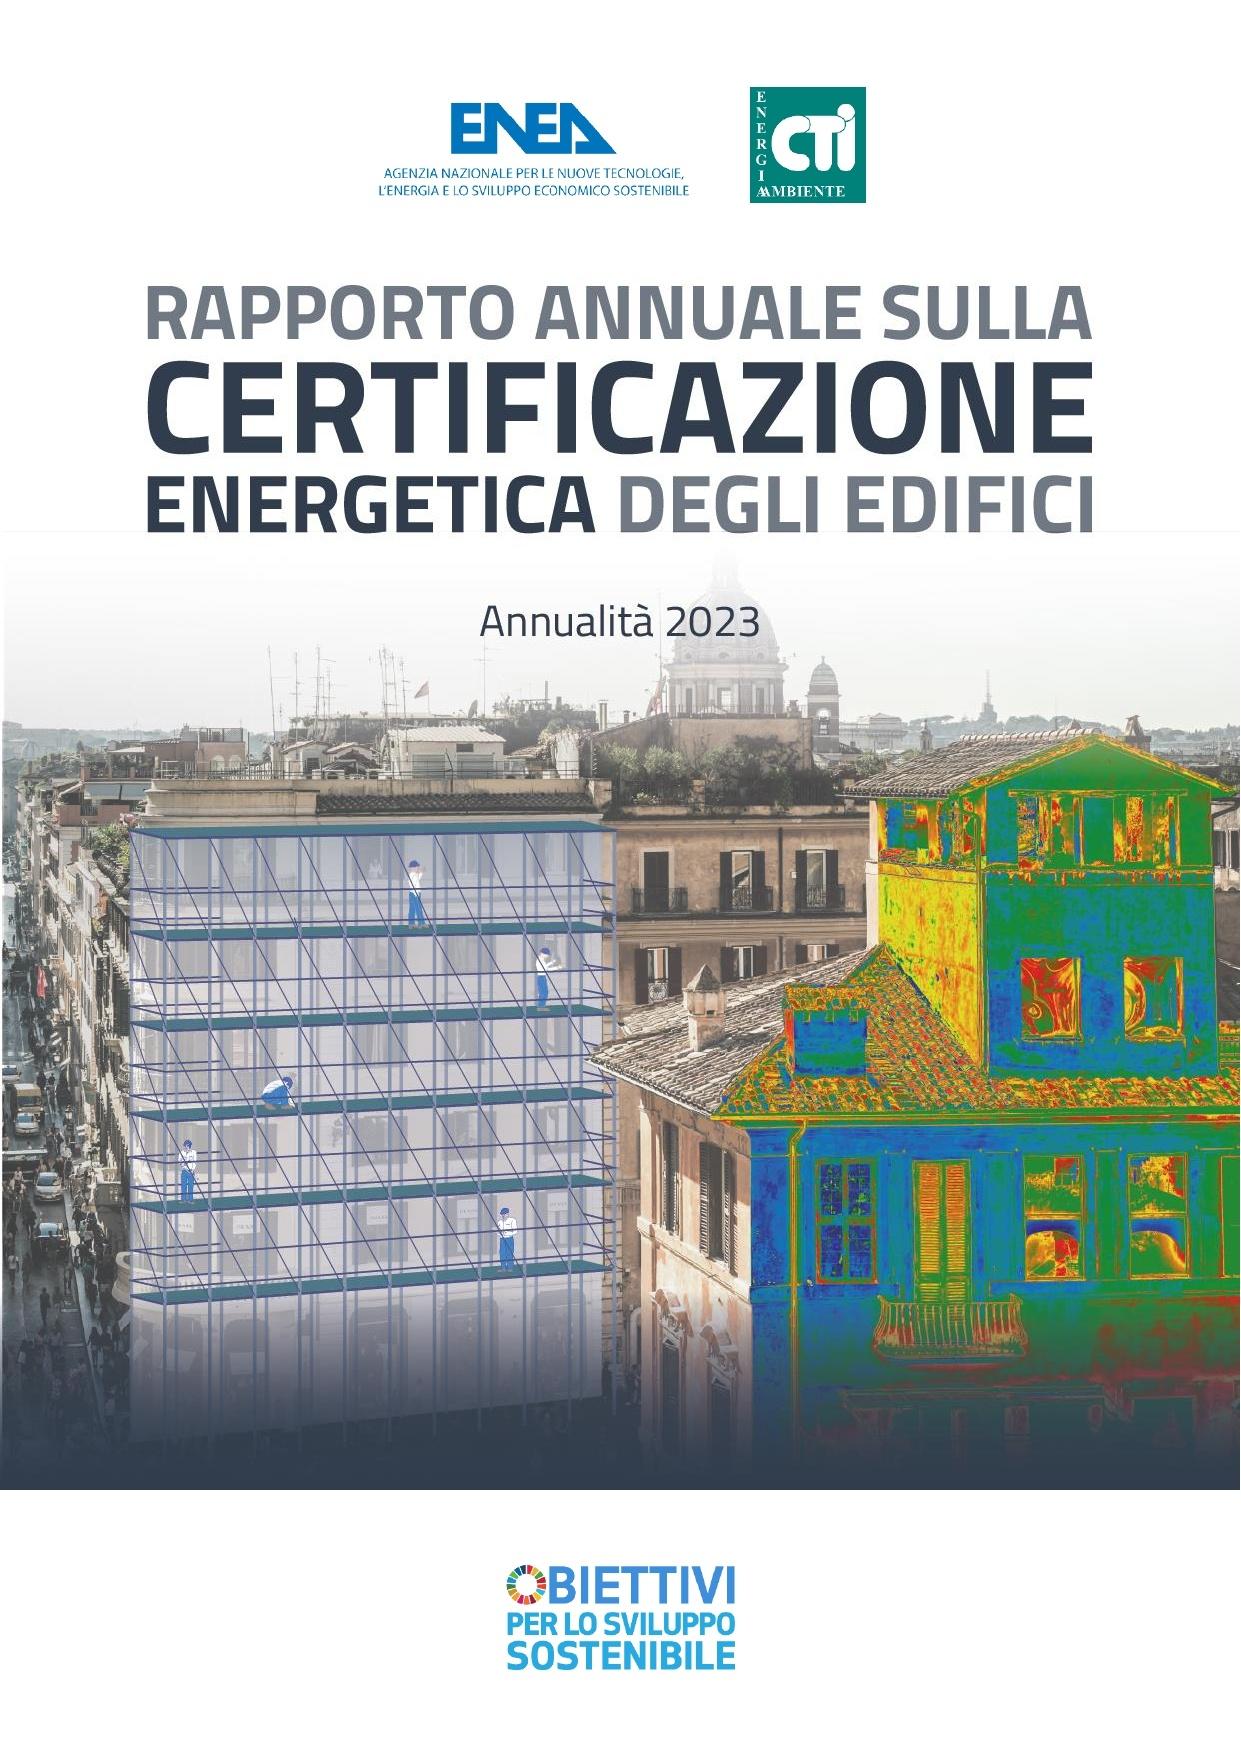 La copertina del Rapporto annuale sulla Certificazione Energetica degli Edifici con i loghi di ENEA e CTI e in basso la dicitura "Obiettivi per lo sviluppo sostenibile". Al centro l'immagine di alcuni palazzi in un paesaggio urbano